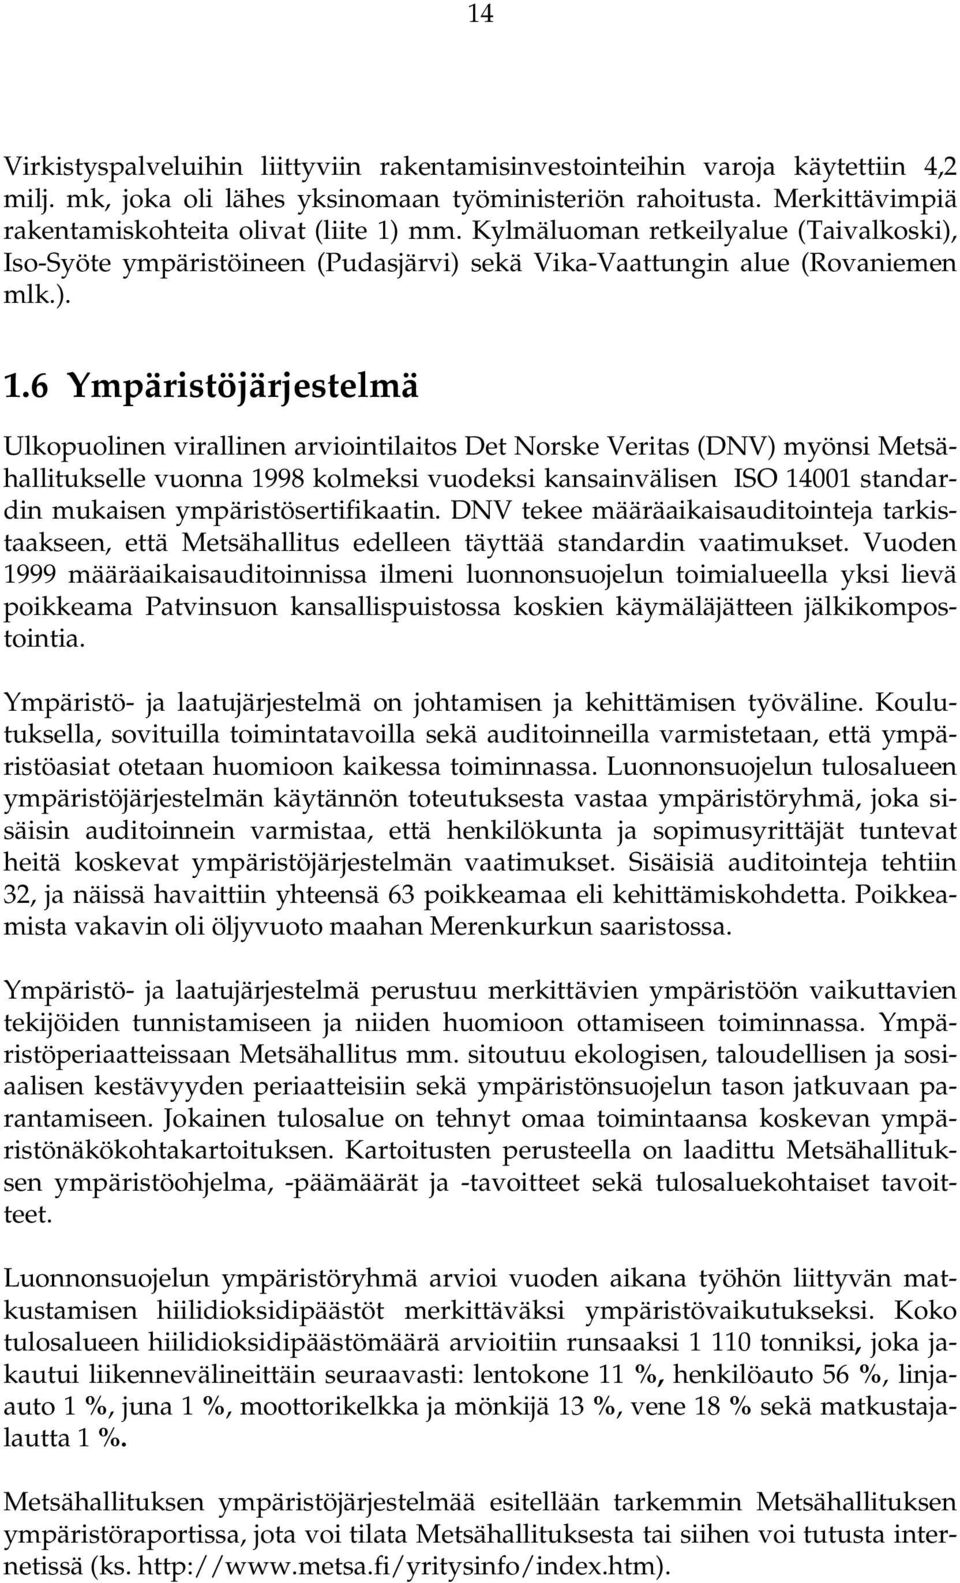 6 Ympäristöjärjestelmä Ulkopuolinen virallinen arviointilaitos Det Norske Veritas (DNV) myönsi Metsähallitukselle vuonna 1998 kolmeksi vuodeksi kansainvälisen ISO 14001 standardin mukaisen